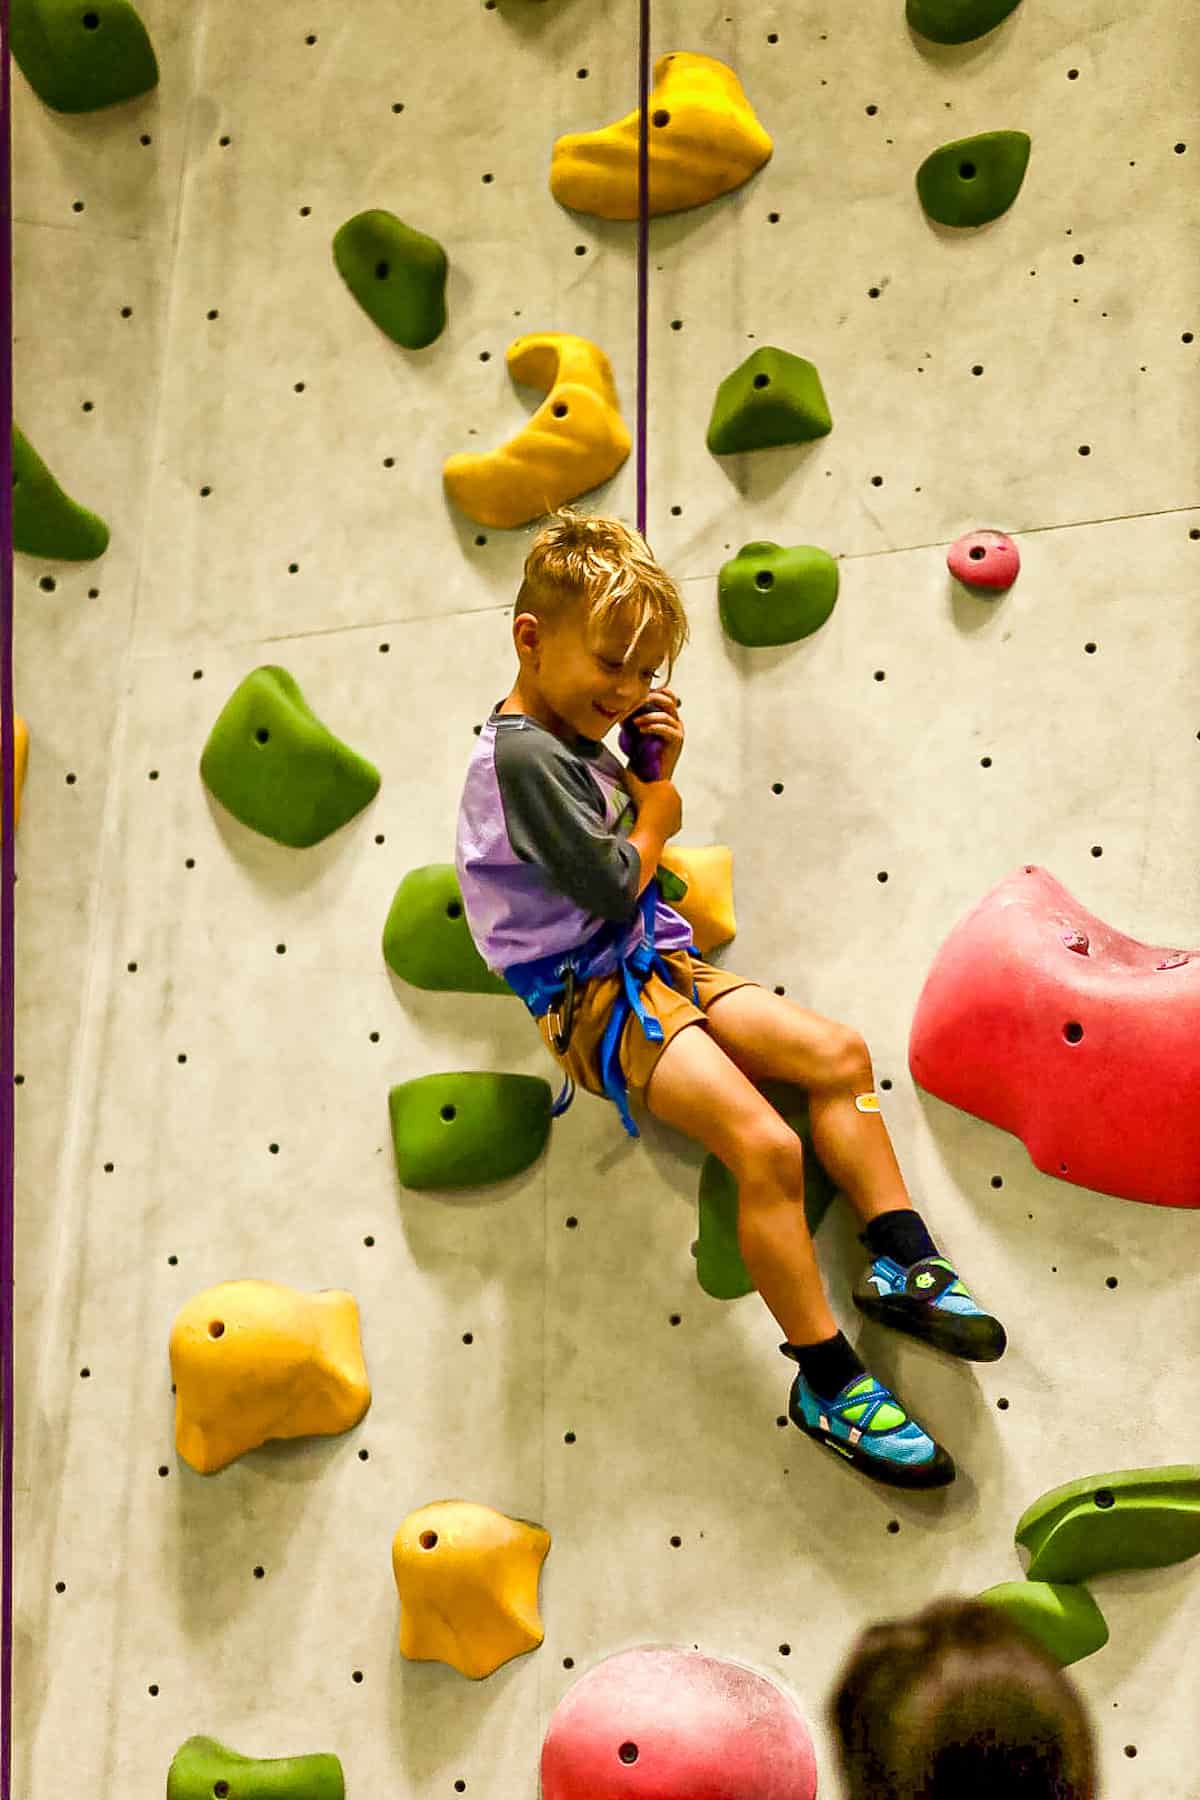 young rock climber descending a climbing wall